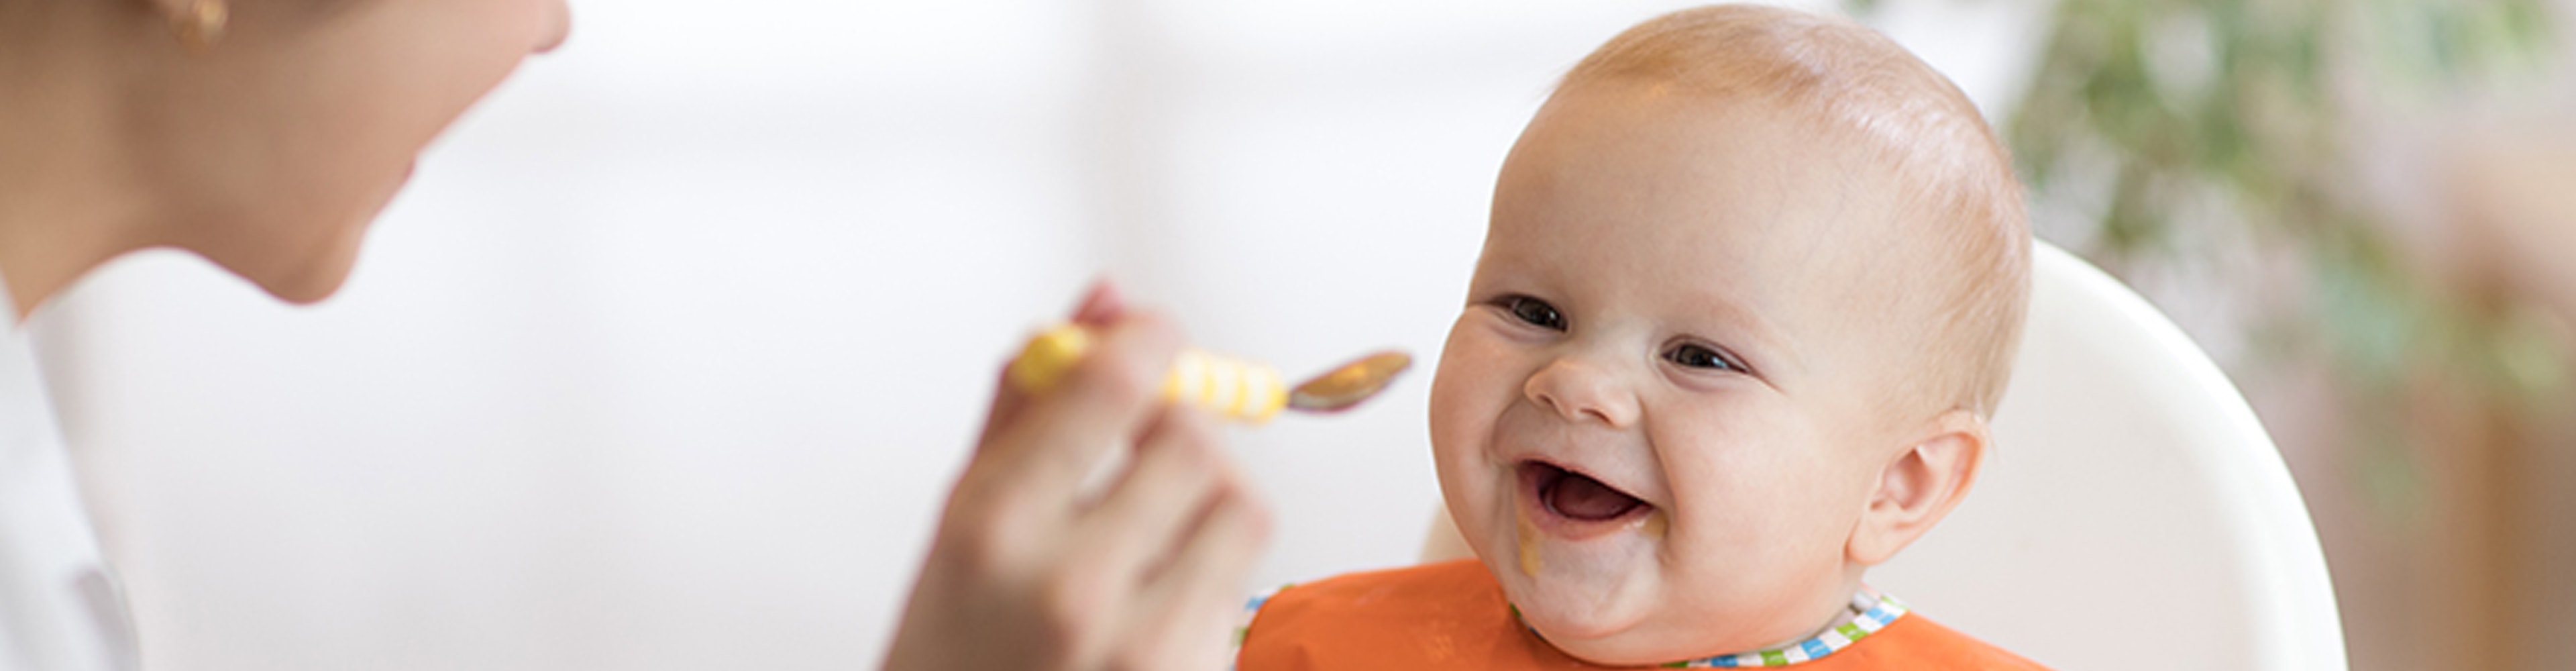 Quelles sont les recommandations générales sur l’alimentation de bébé jusqu’à son premier anniversaire?